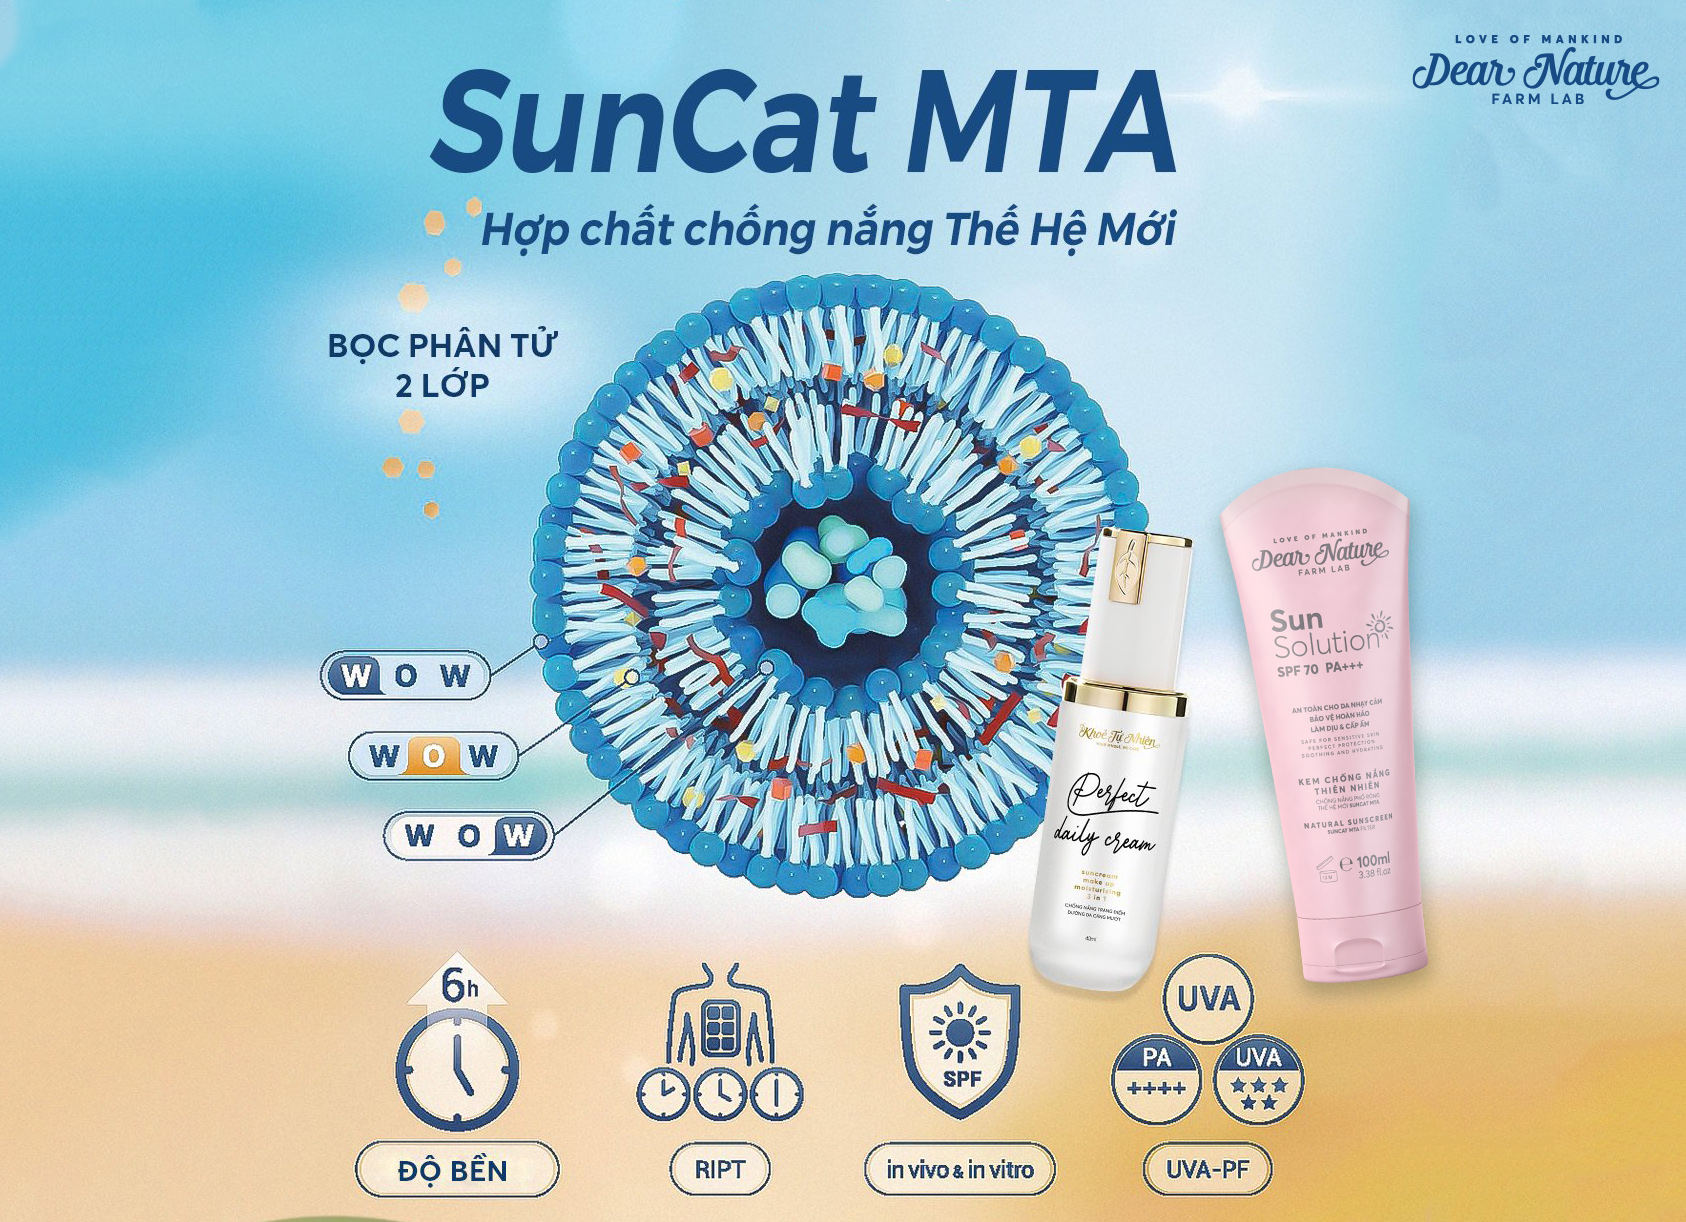 SunCat MTA, hợp chất chống nắng thế hệ mới với khả năng bảo vệ da vượt trội, được Dear Nature lựa chọn trong các sản phẩm chống nắng an toàn, lành tính của hãng. 